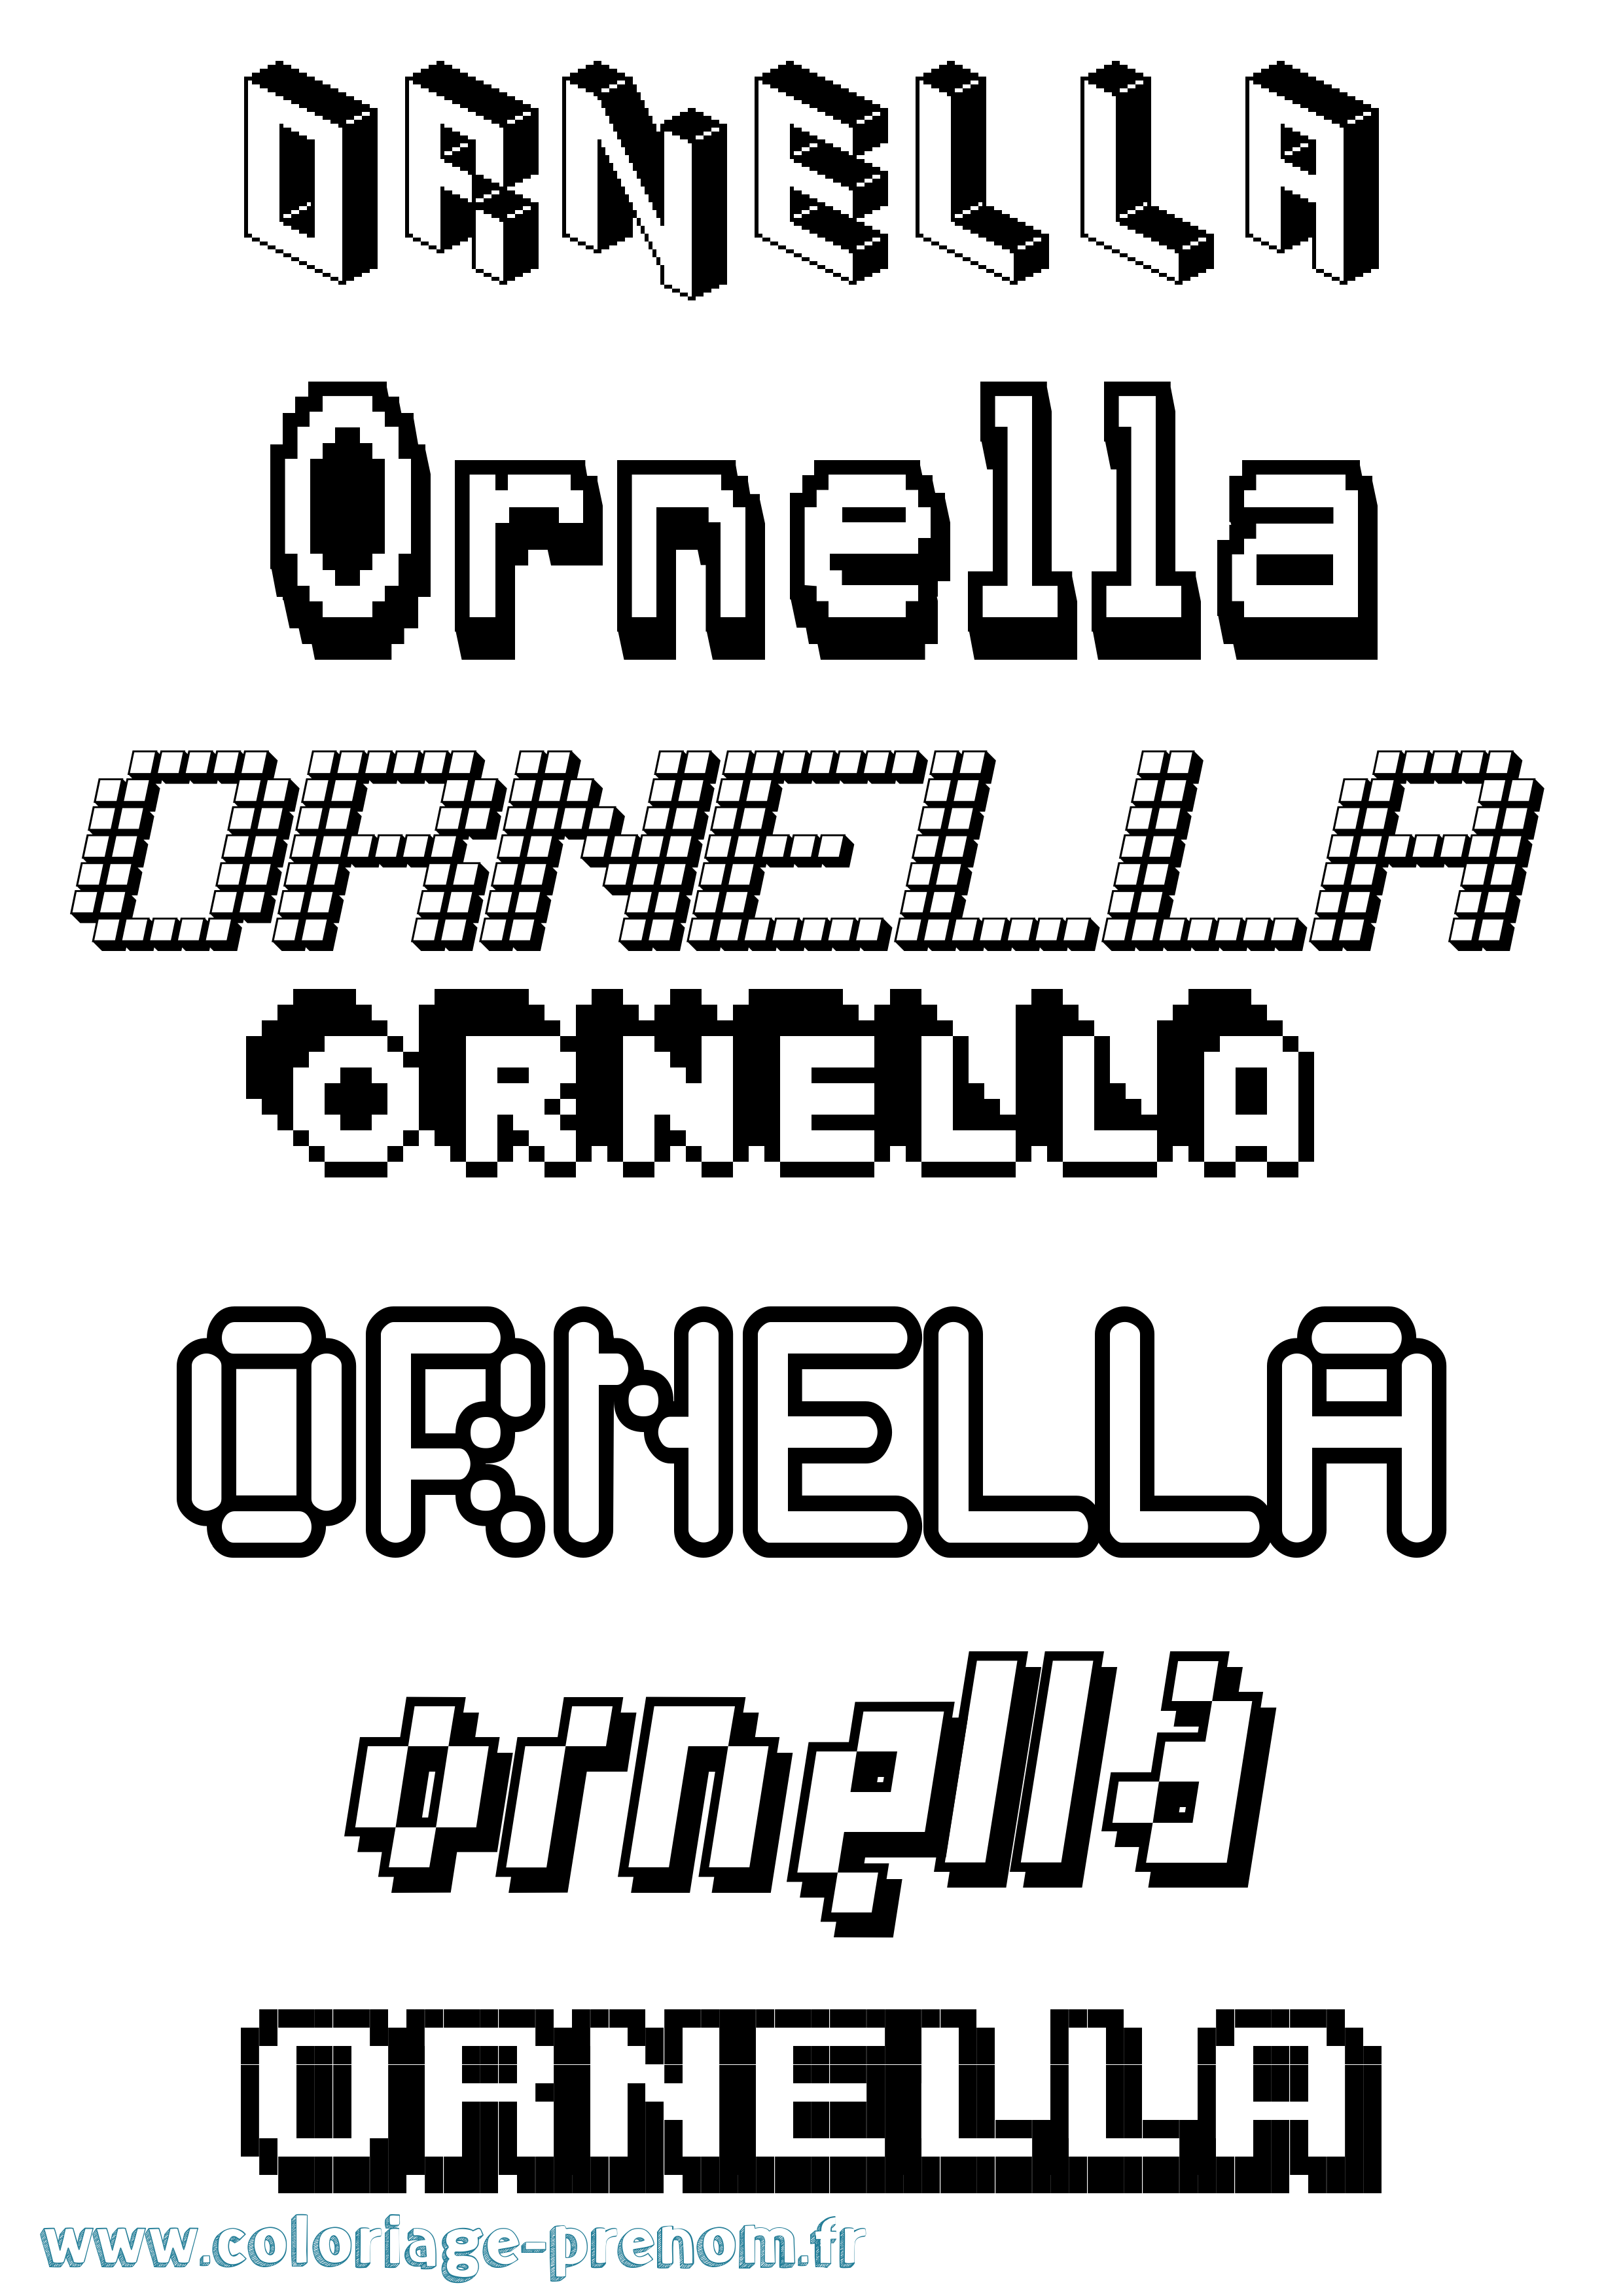 Coloriage prénom Ornella